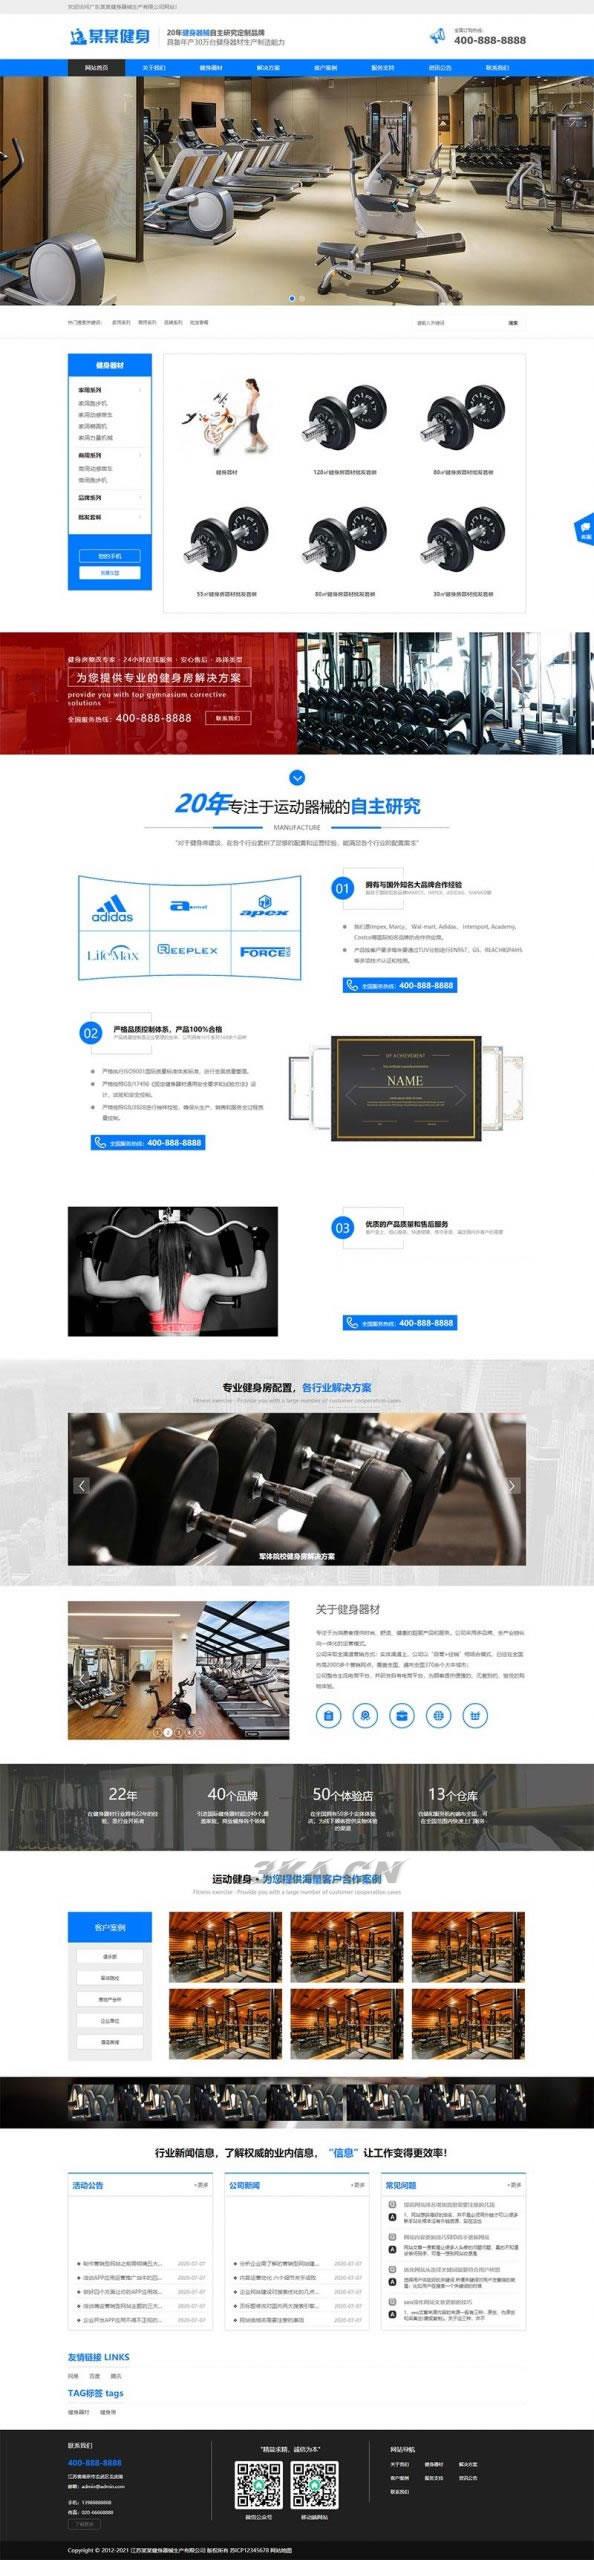 织梦内核蓝色响应式营销型运动健身器械器材企业网站模板 带手机版